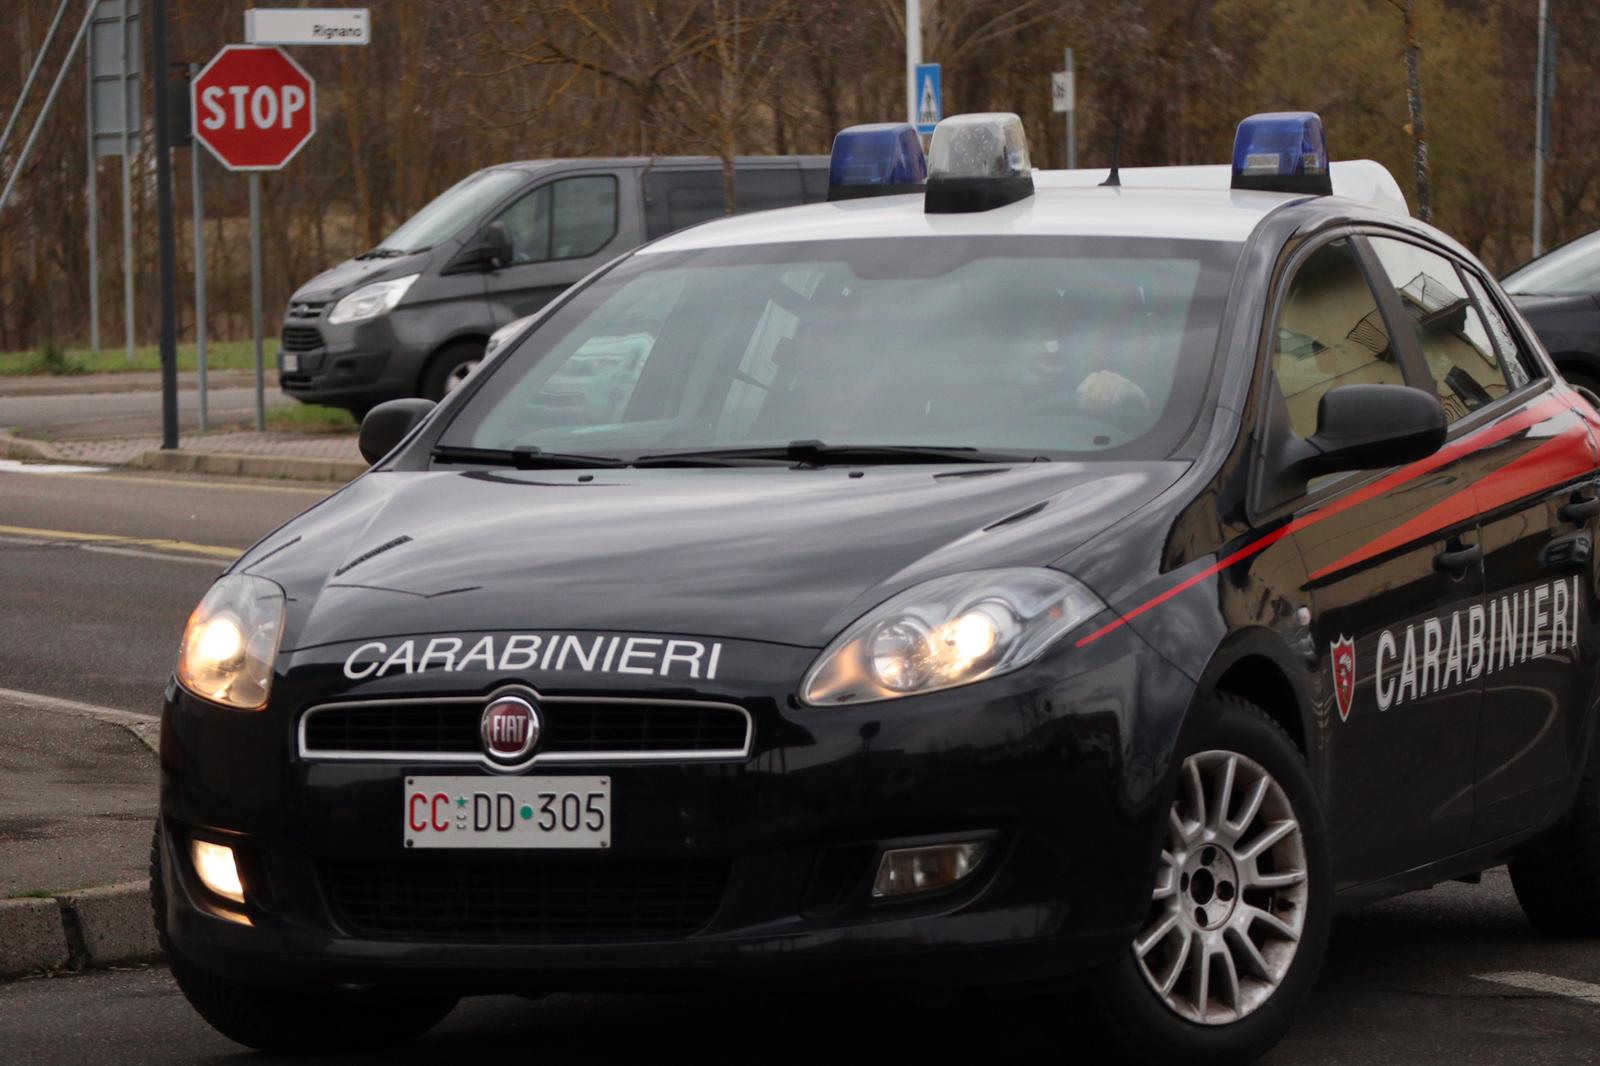 Truffa del pacco in giacenza: due persone denunciate dai carabinieri